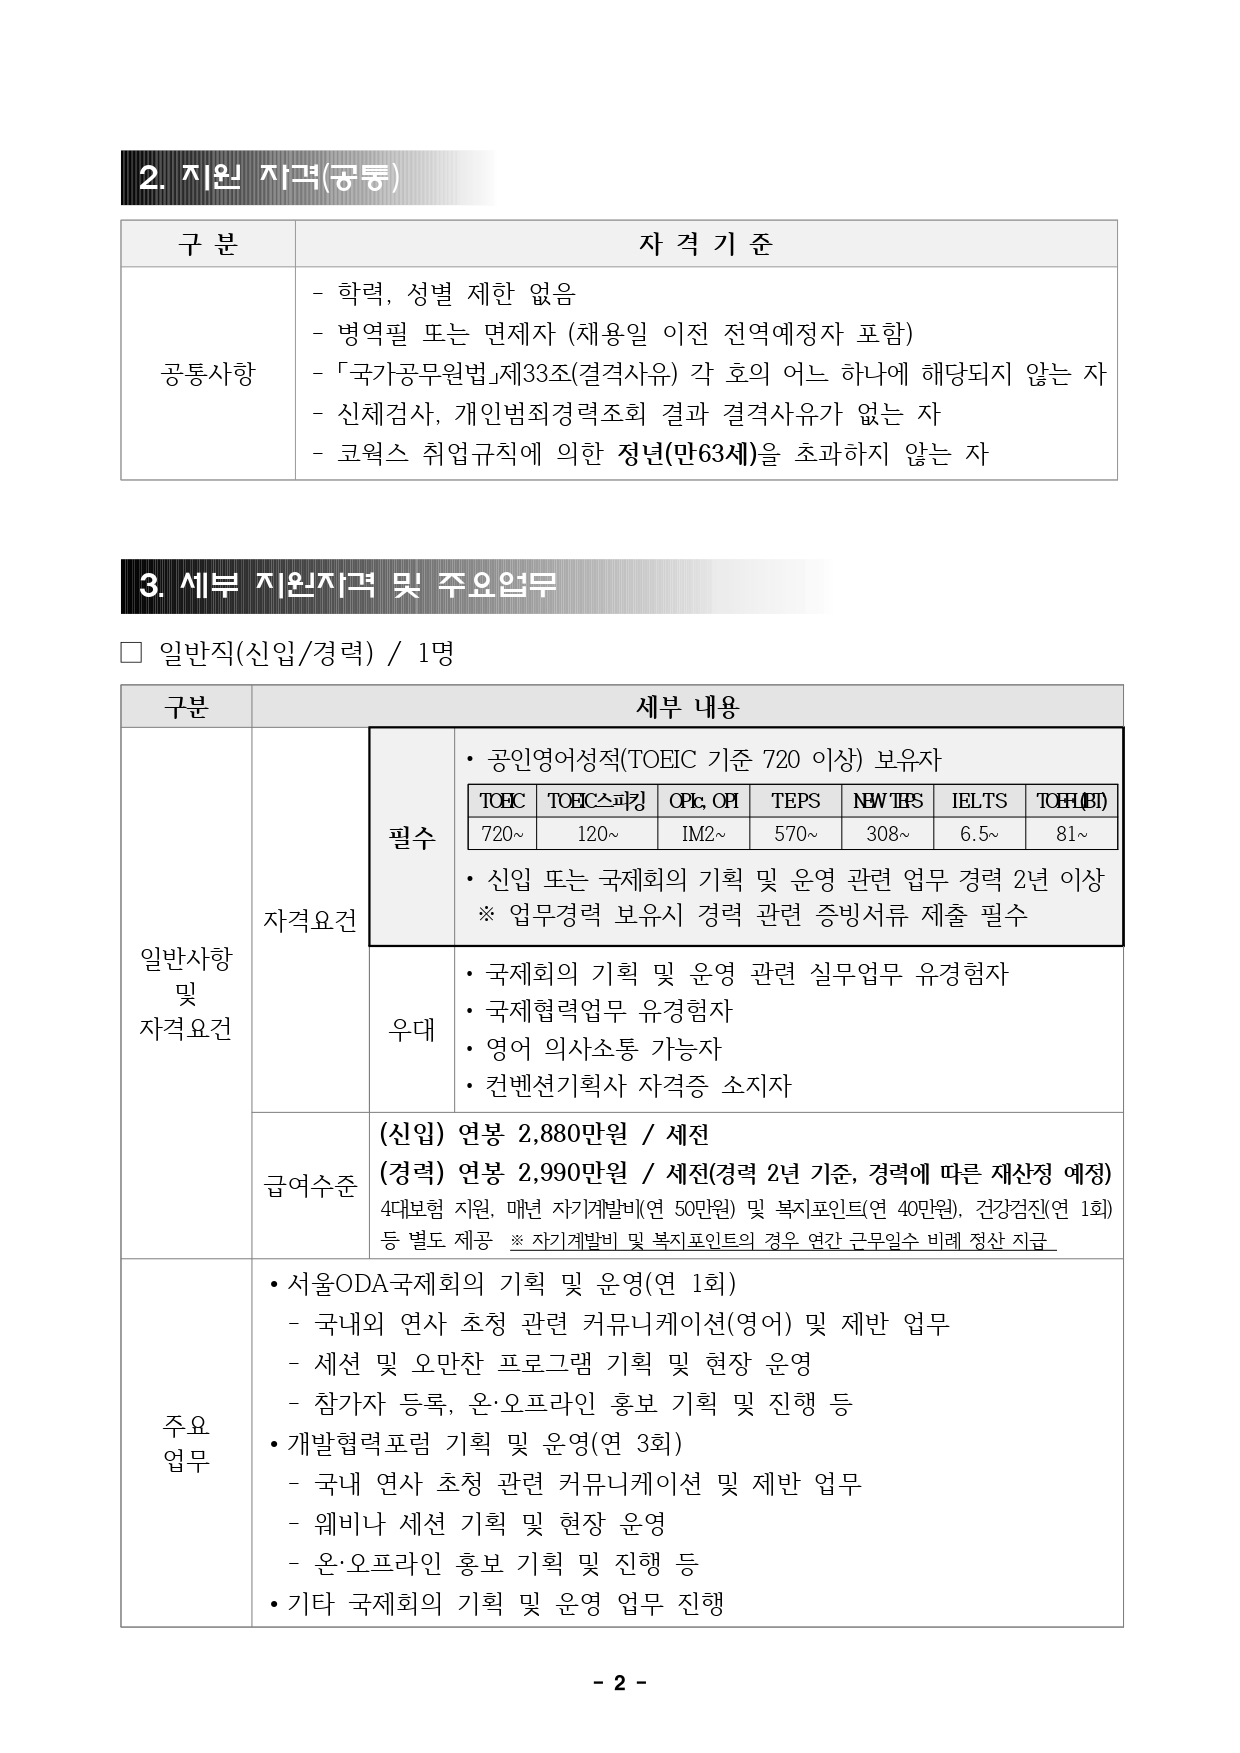 붙임4. 직원채용 공고문(서울,컨벤션)_page-0002.jpg